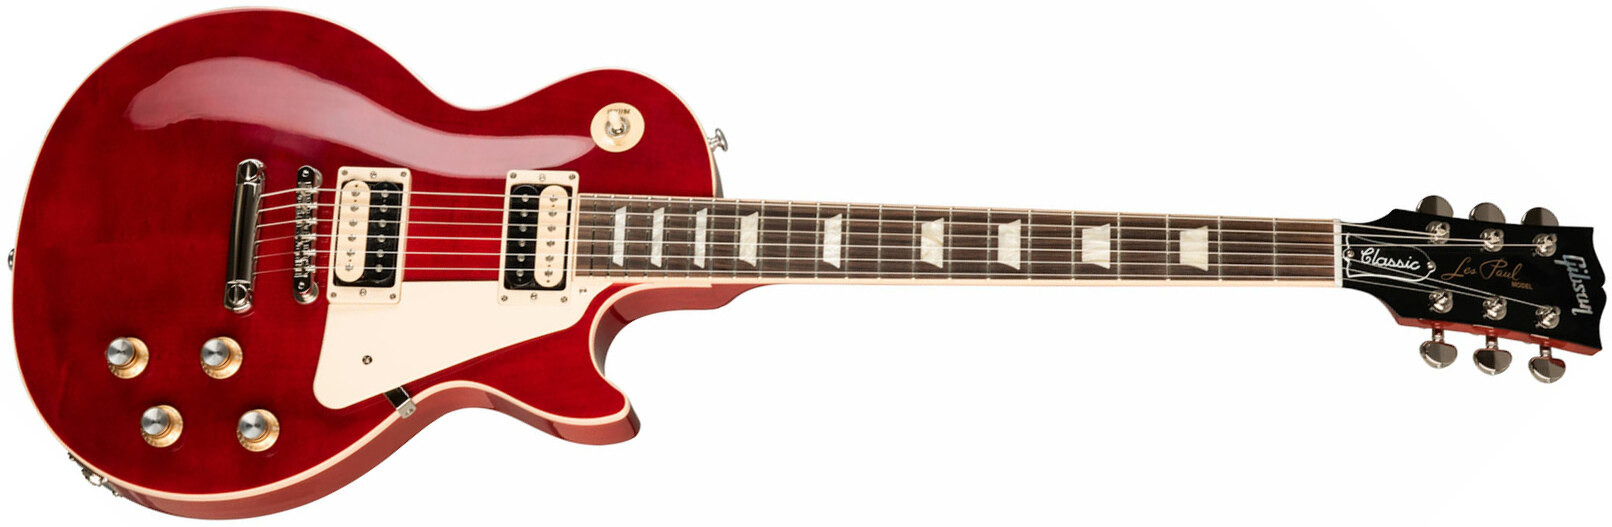 Gibson Les Paul Classic Modern 2h Ht Rw - Trans Cherry - Guitarra eléctrica de corte único. - Main picture